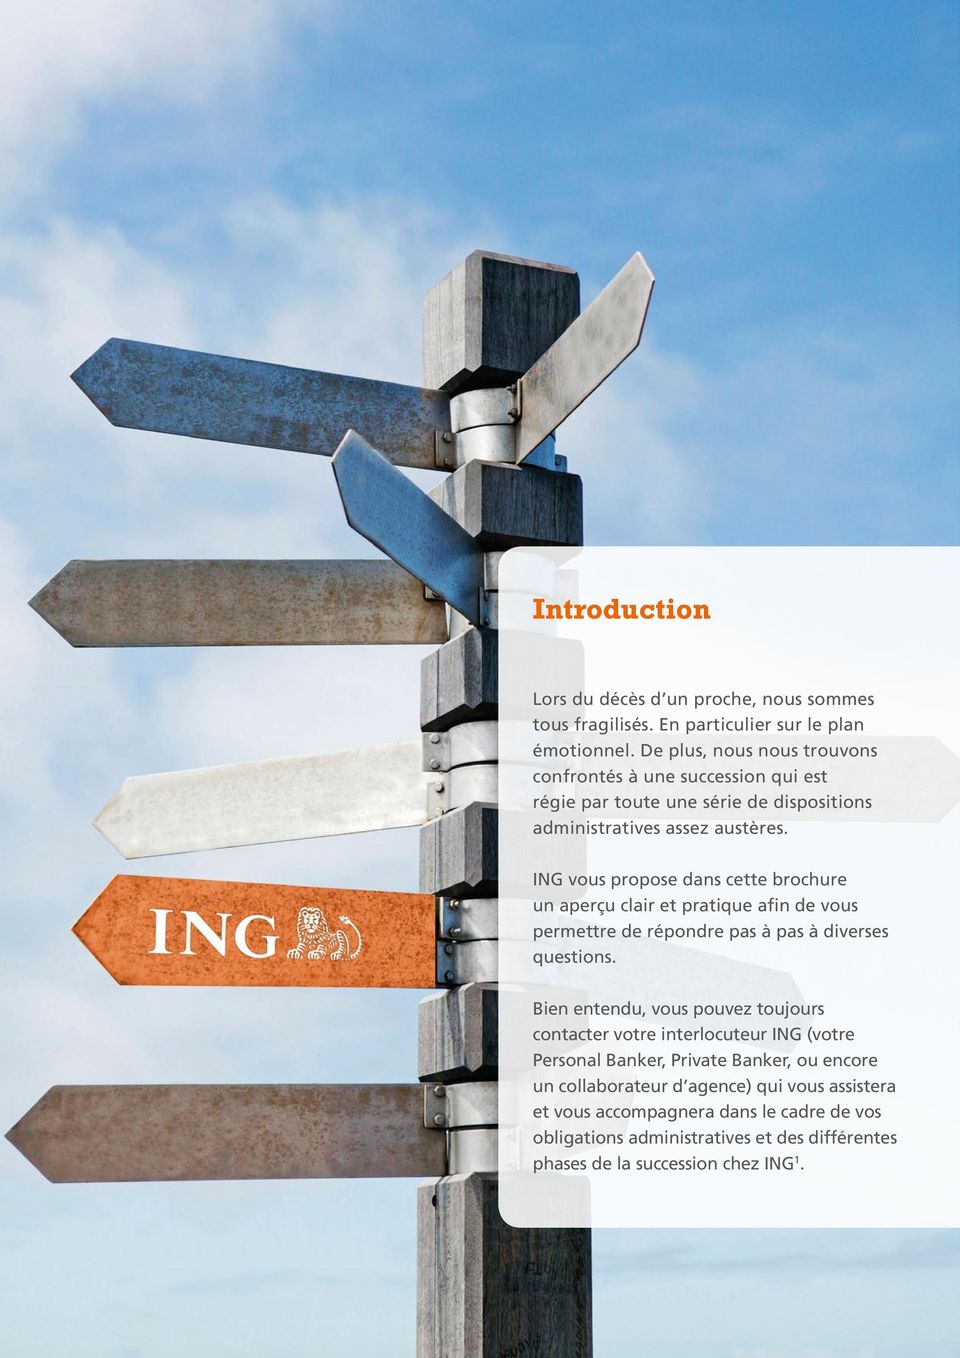 ING vous propose dans cette brochure un aperçu clair et pratique afin de vous permettre de répondre pas à pas à diverses questions.